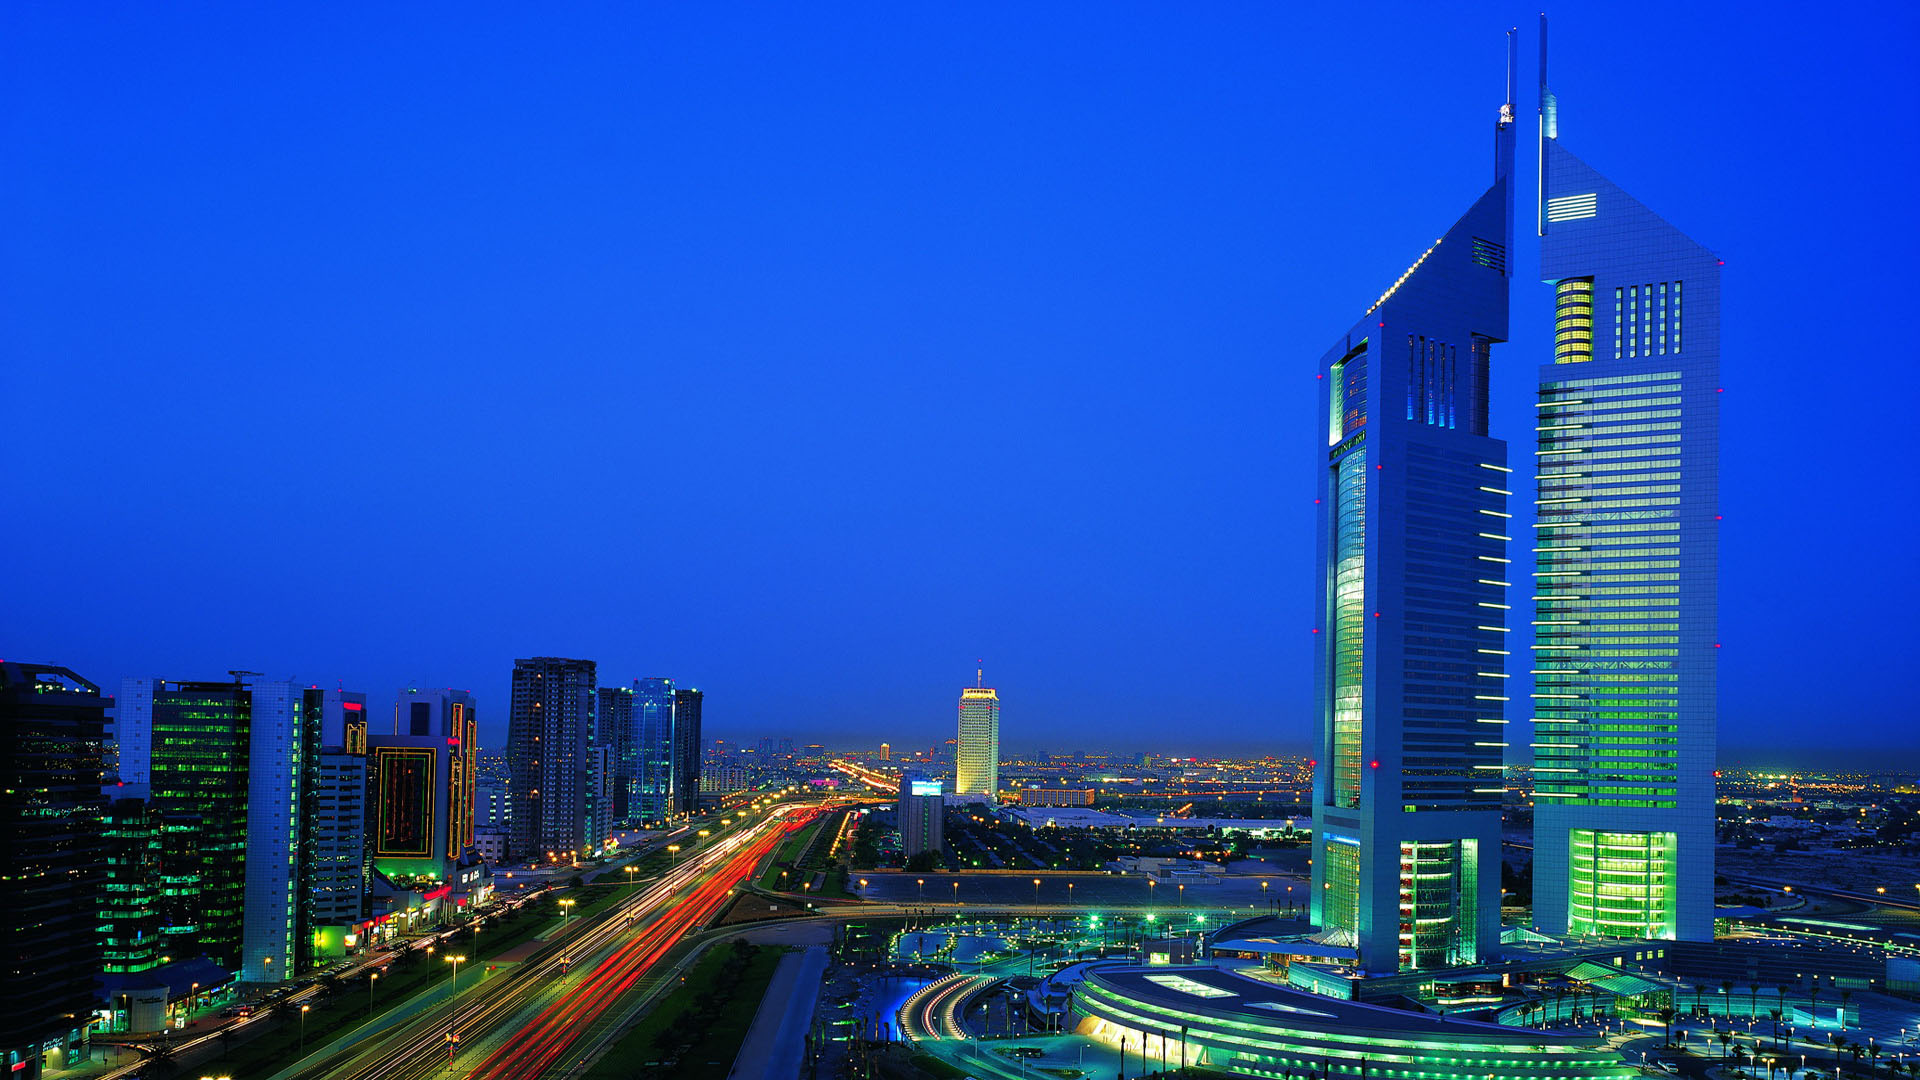 الإمارات تتصدر إقليمياً وعالمياً في الدخل والتوظيف والتعليم وغيرها